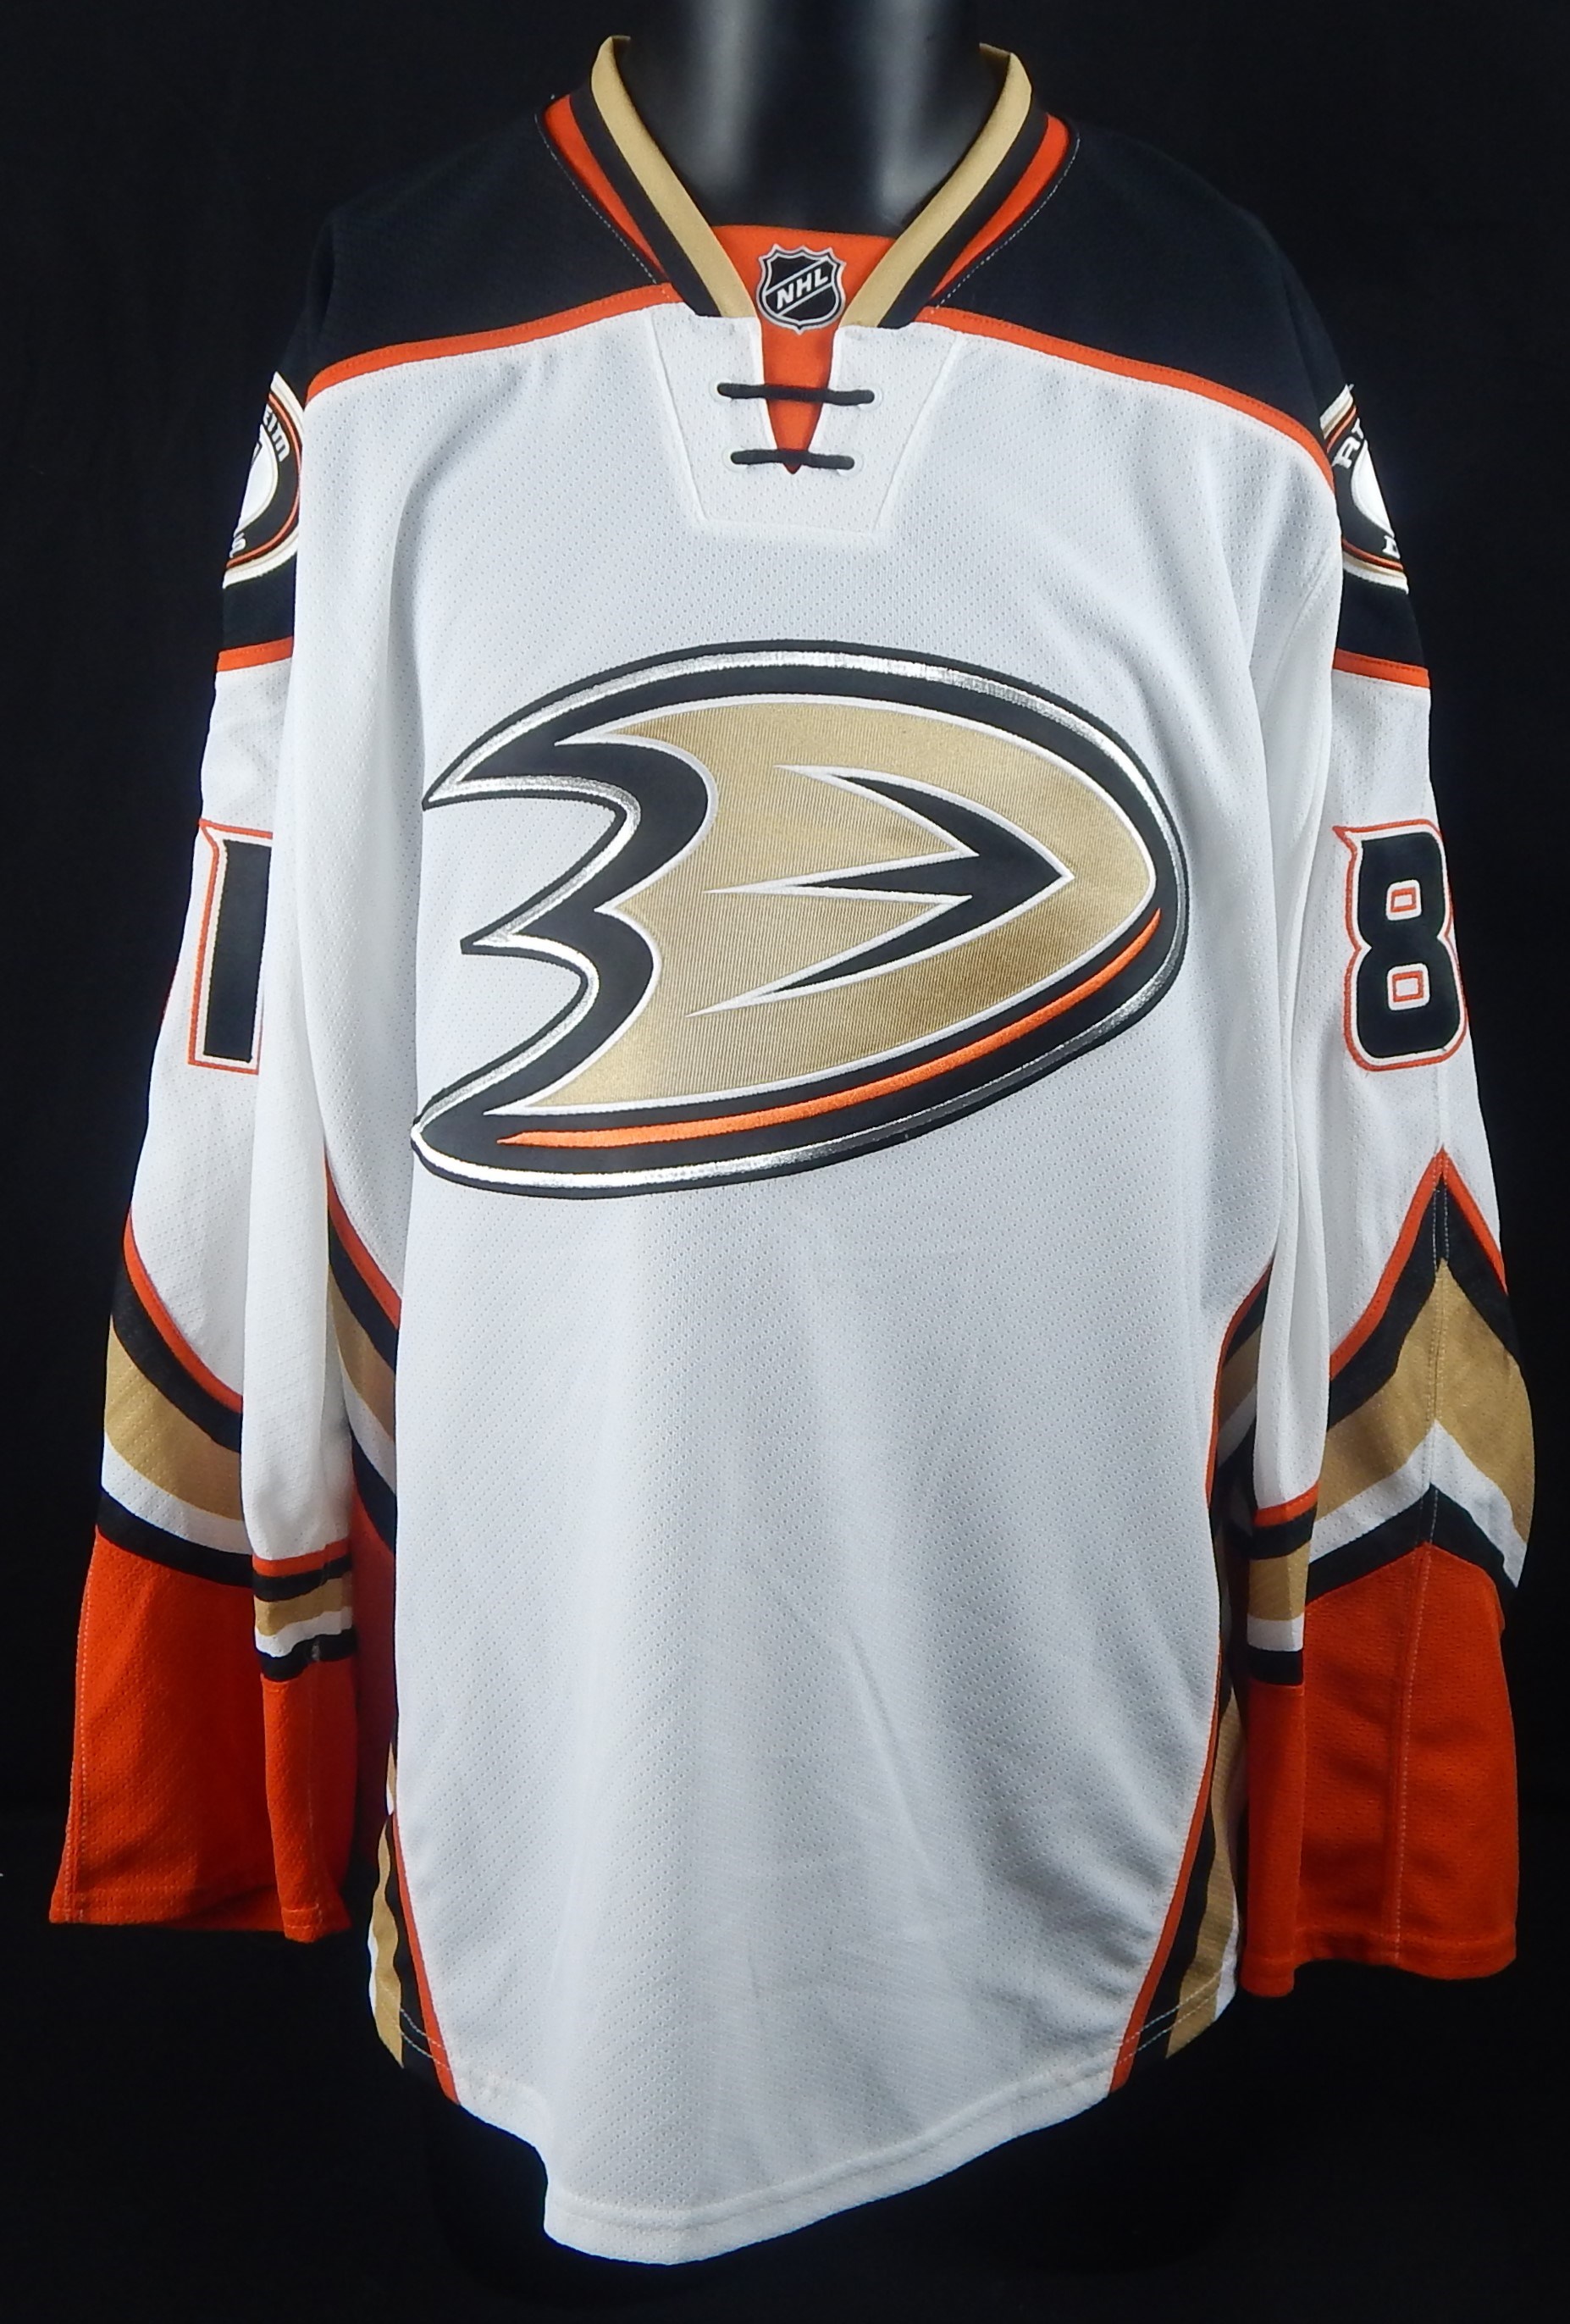 - 2015-16 Anaheim Ducks' Matthew Berkovitz Game Worn Jersey